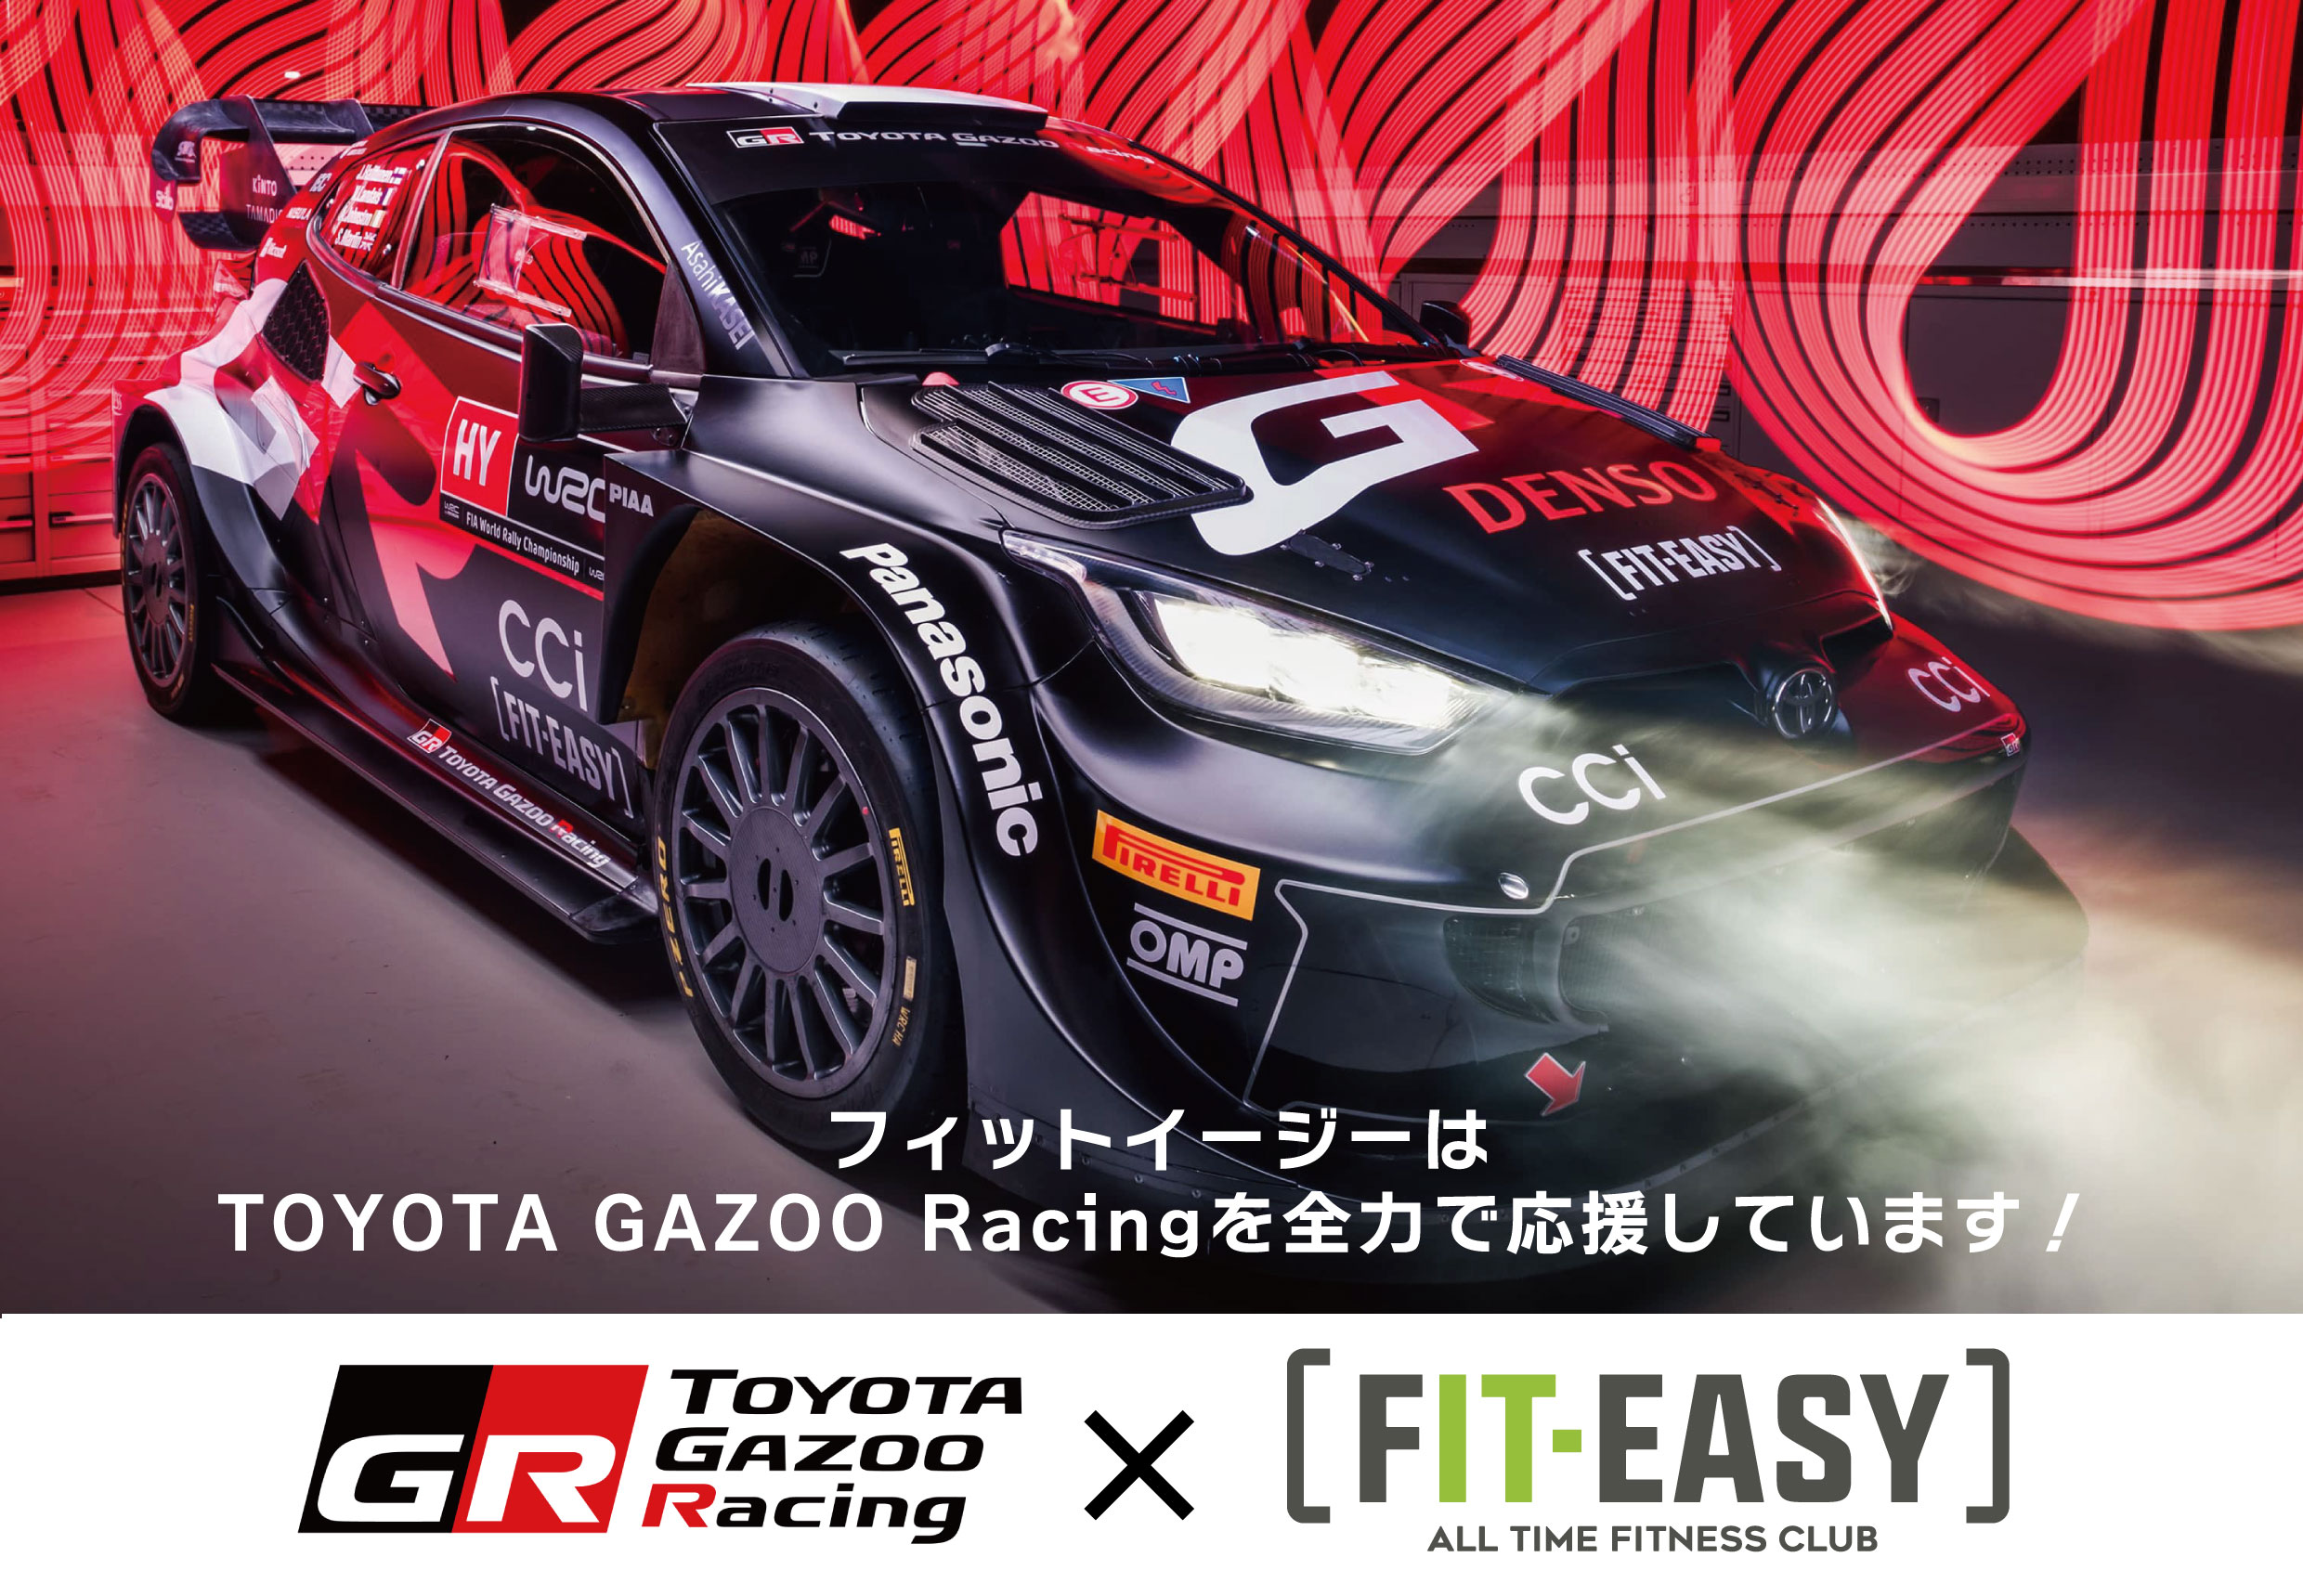 フィットイージー株式会社は TOYOTA GAZOO Racing を全力で応援しています！